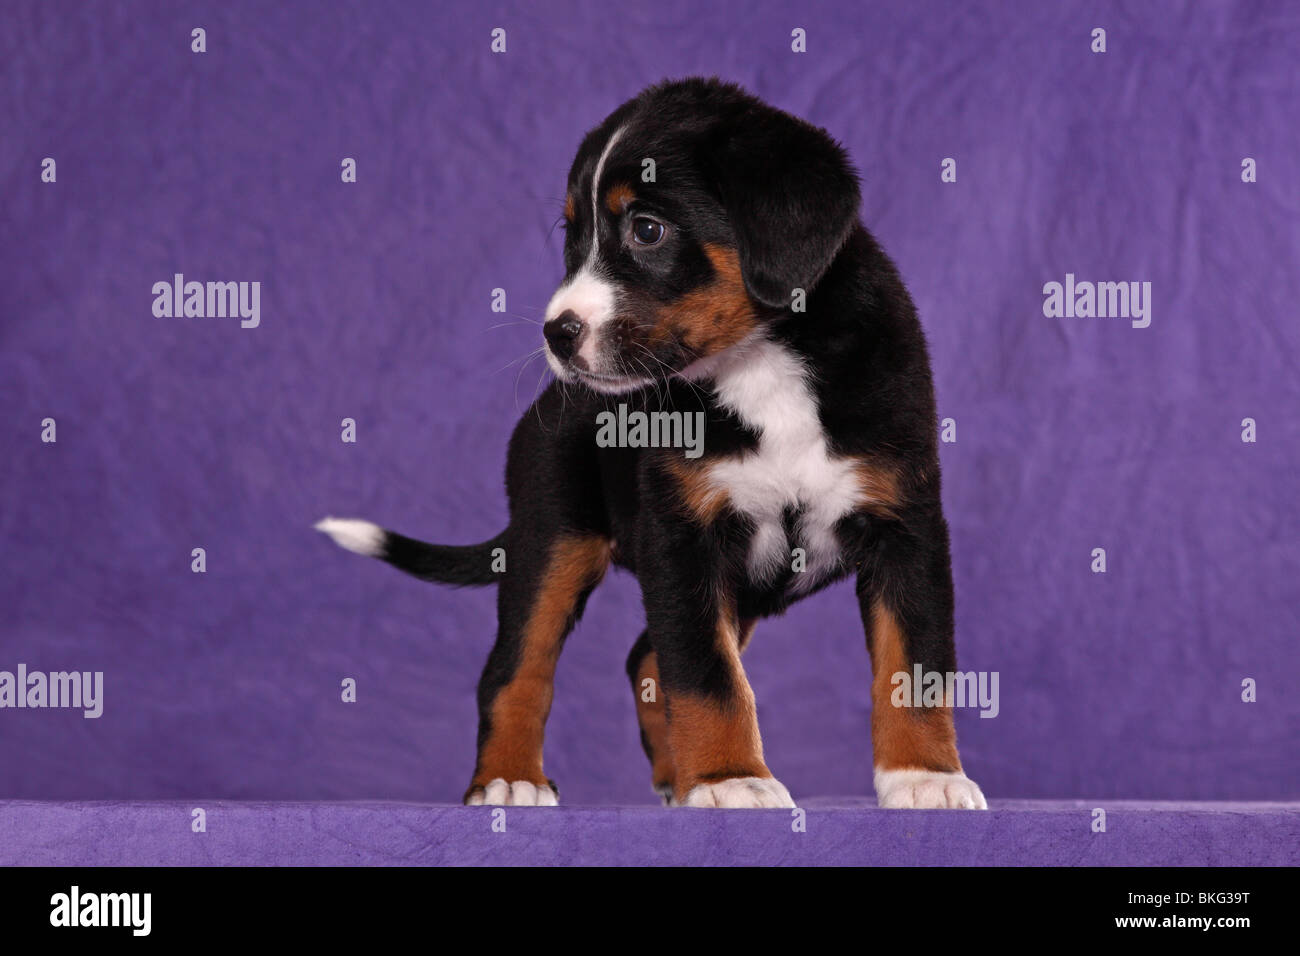 Großer Schweizer Sennenhund Welpe / Great Swiss Mountain Dog Puppy Stock  Photo - Alamy